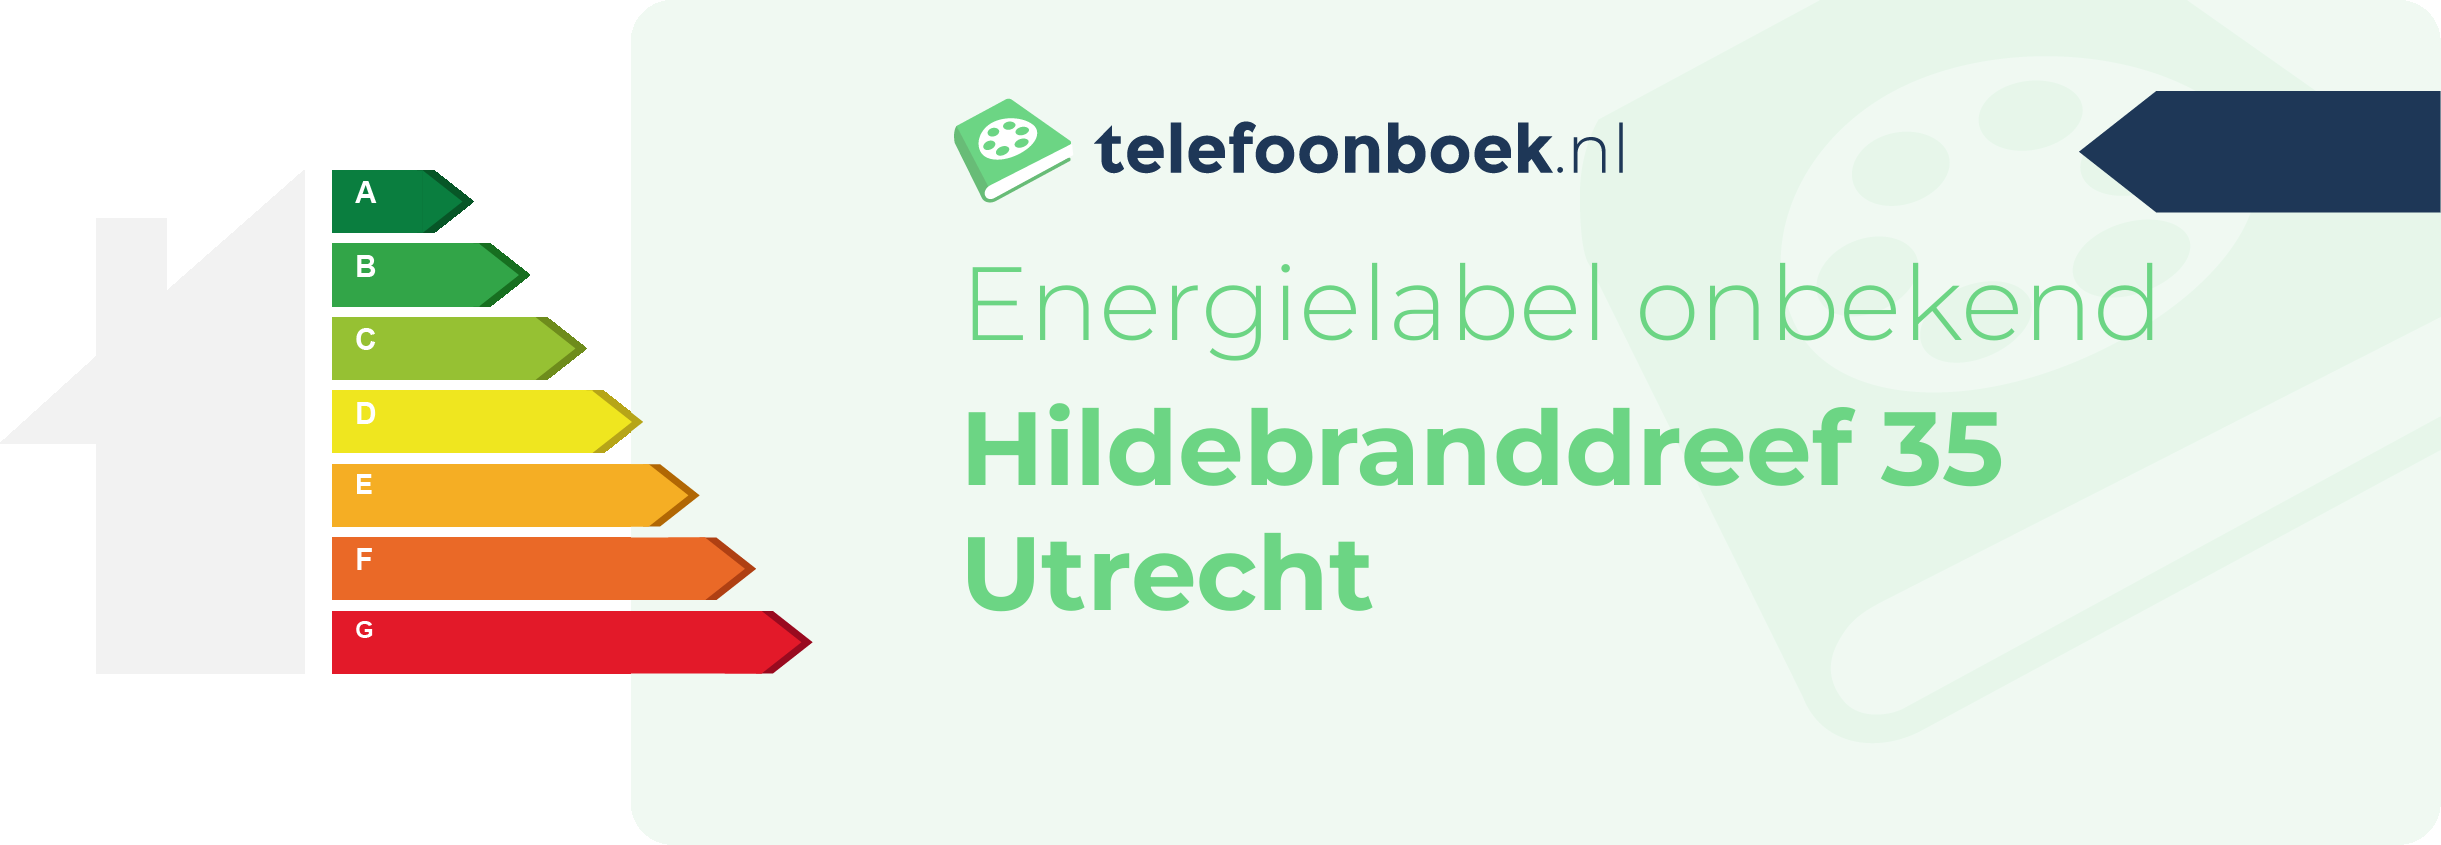 Energielabel Hildebranddreef 35 Utrecht